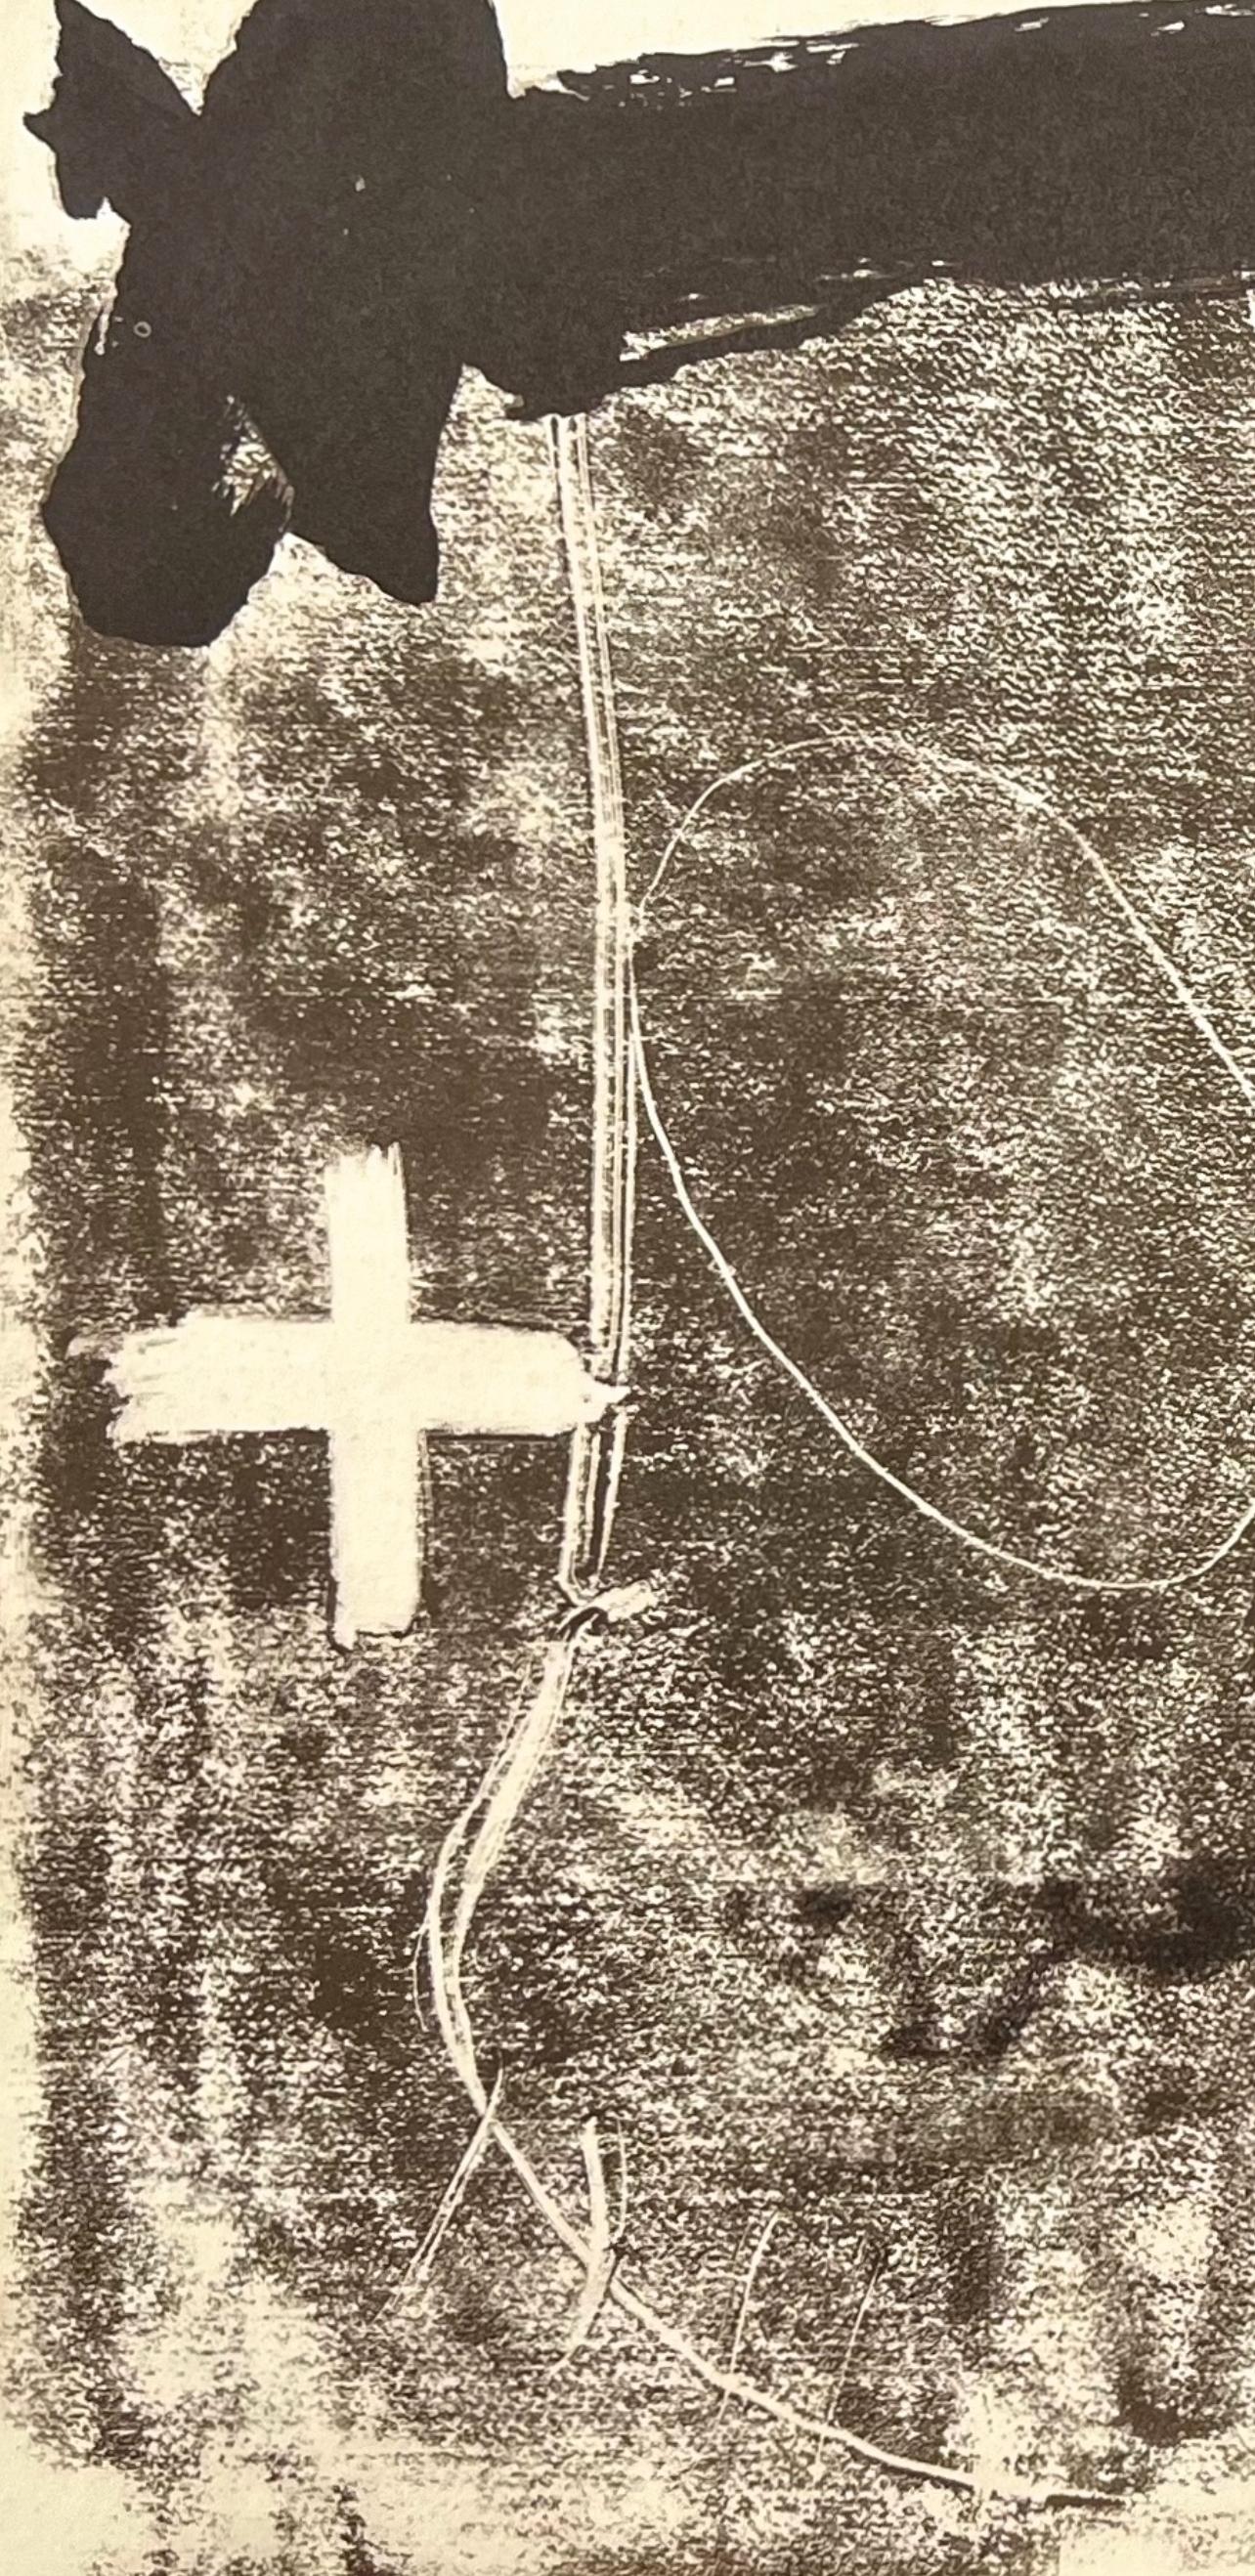 Tàpies, Komposition, Derrière le miroir (nach) – Print von Antoni Tàpies